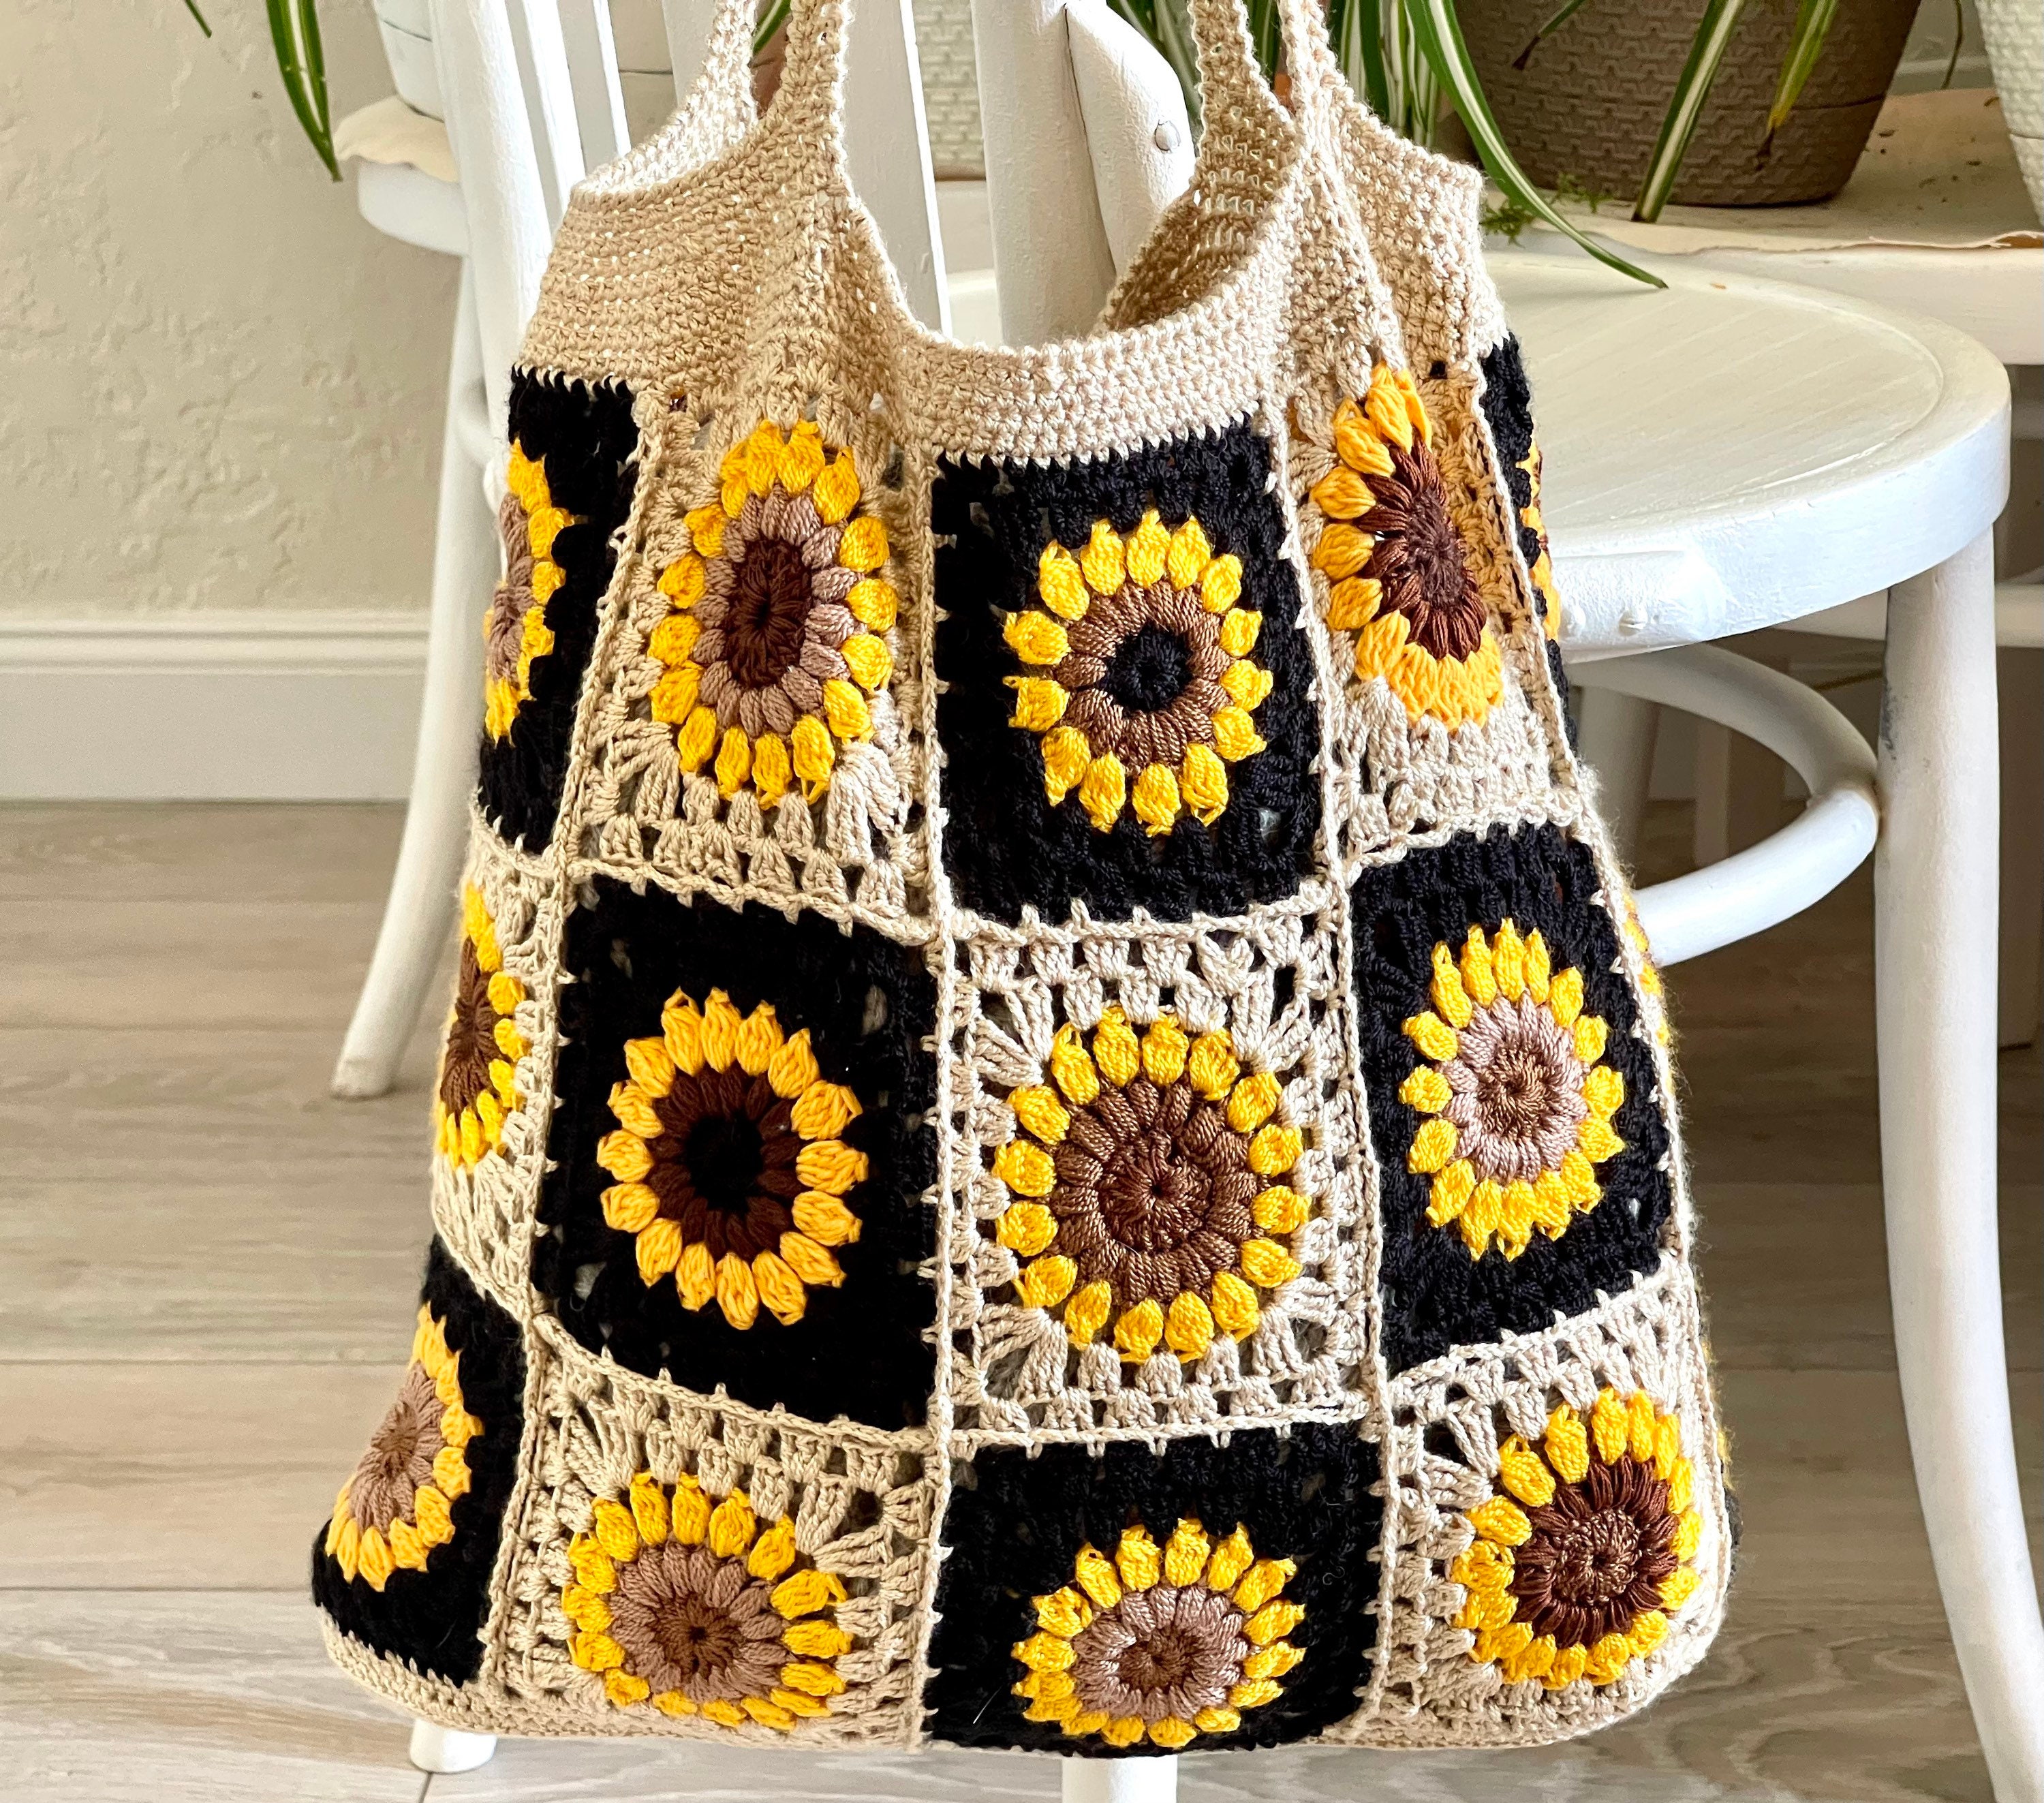 Crochet Sunflower Bag Handmade | eBay